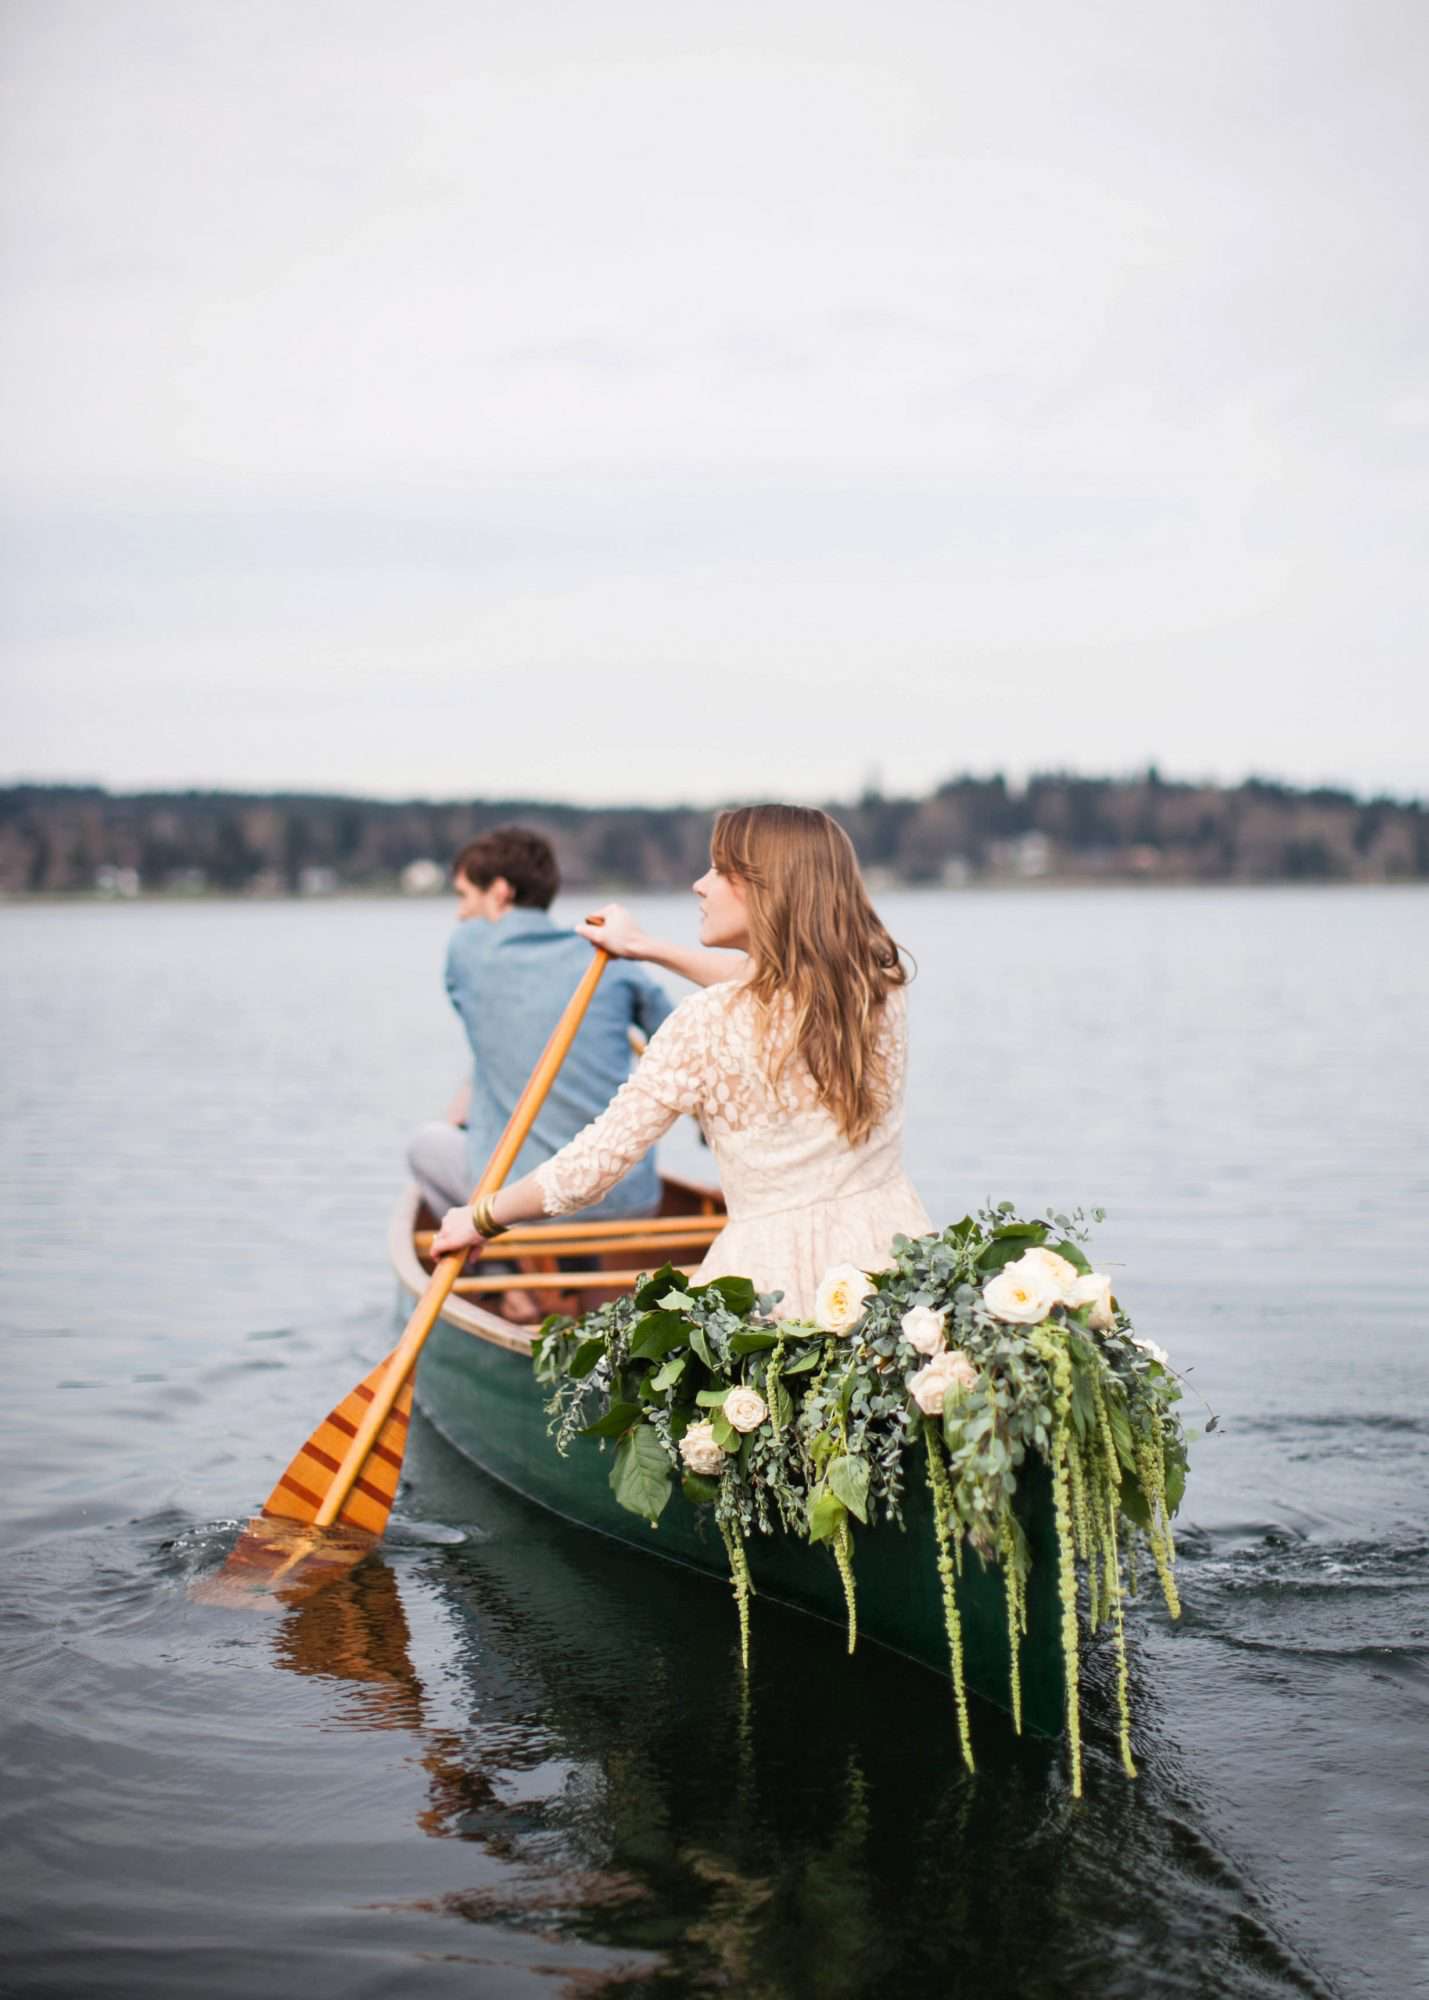 wedding exits canoe marissa maharaj